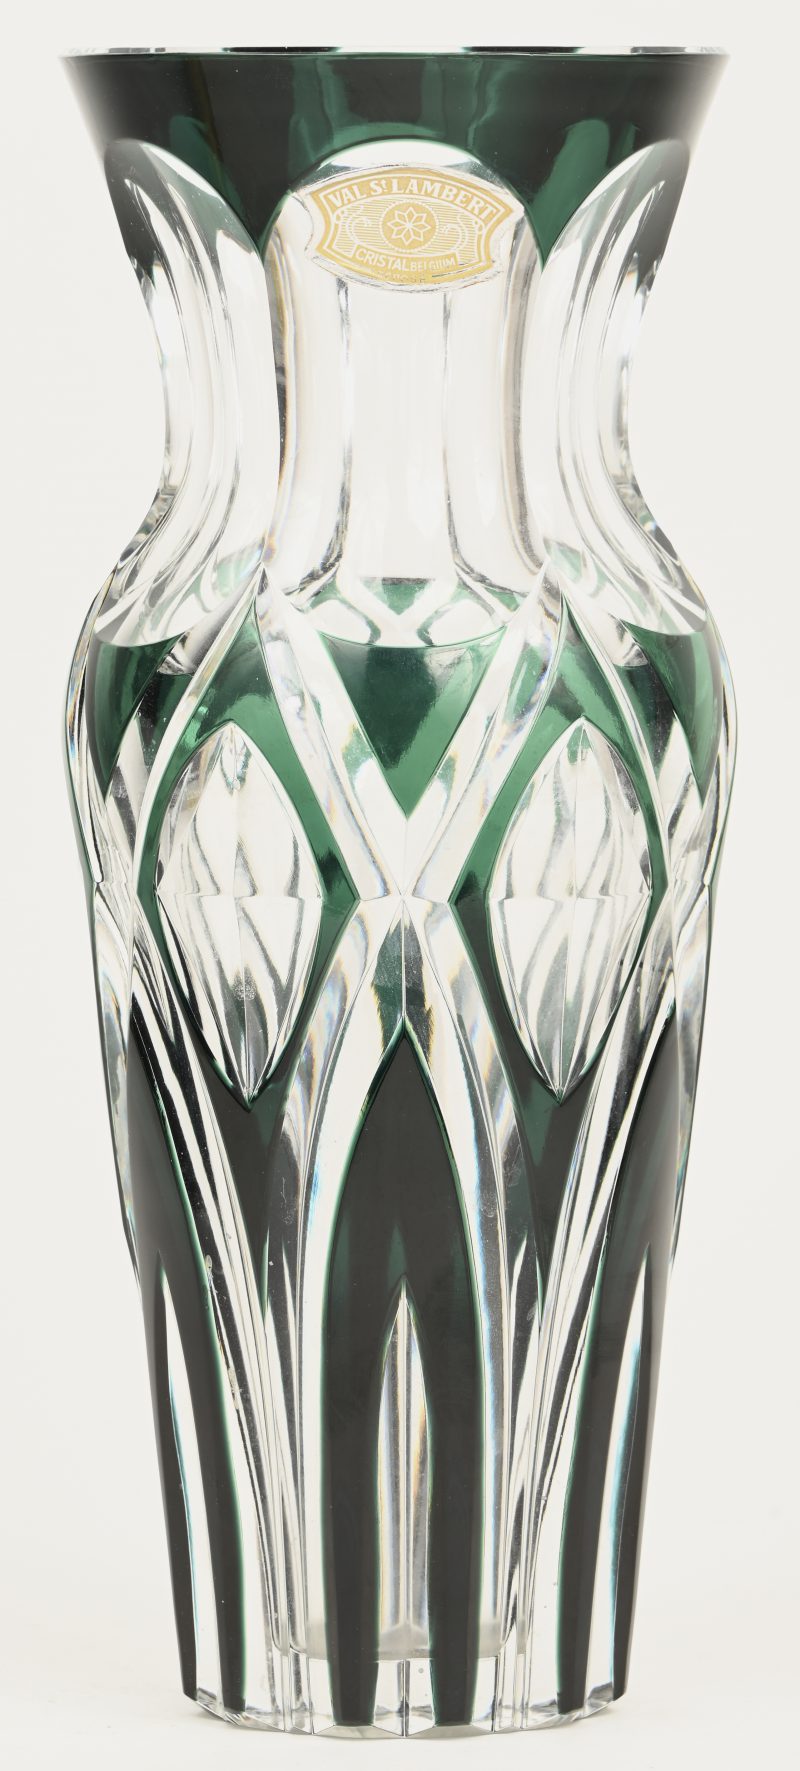 Een kristallen Val Saint Lambert vaas met groen in de massa